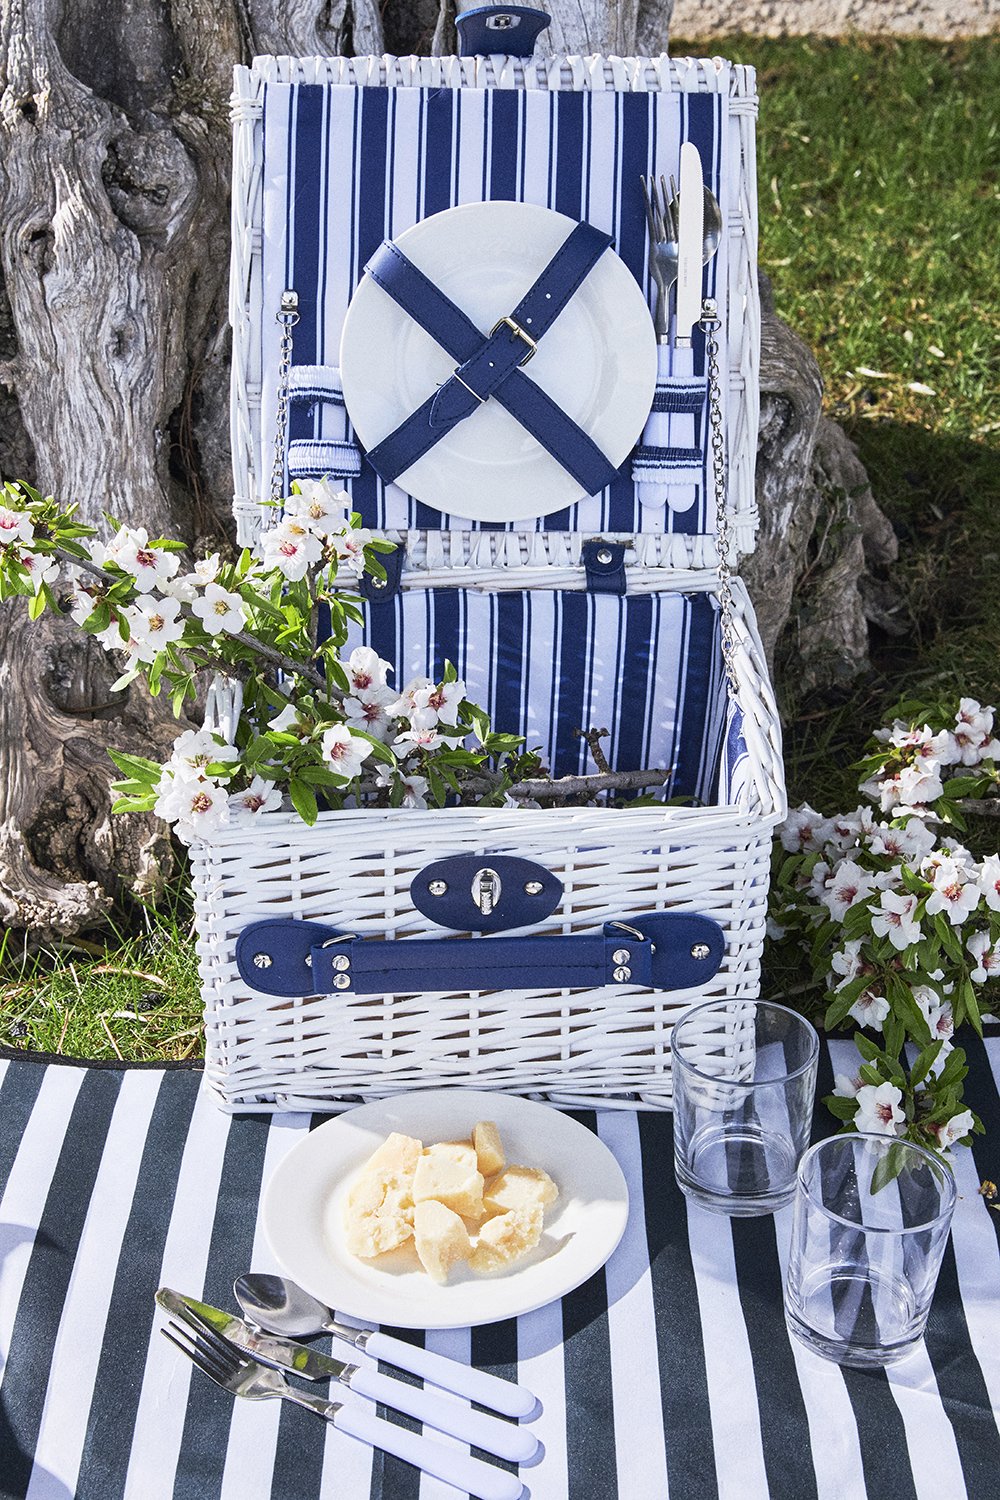 Cristina Oria vende la cesta de picnic para esta primavera 2021